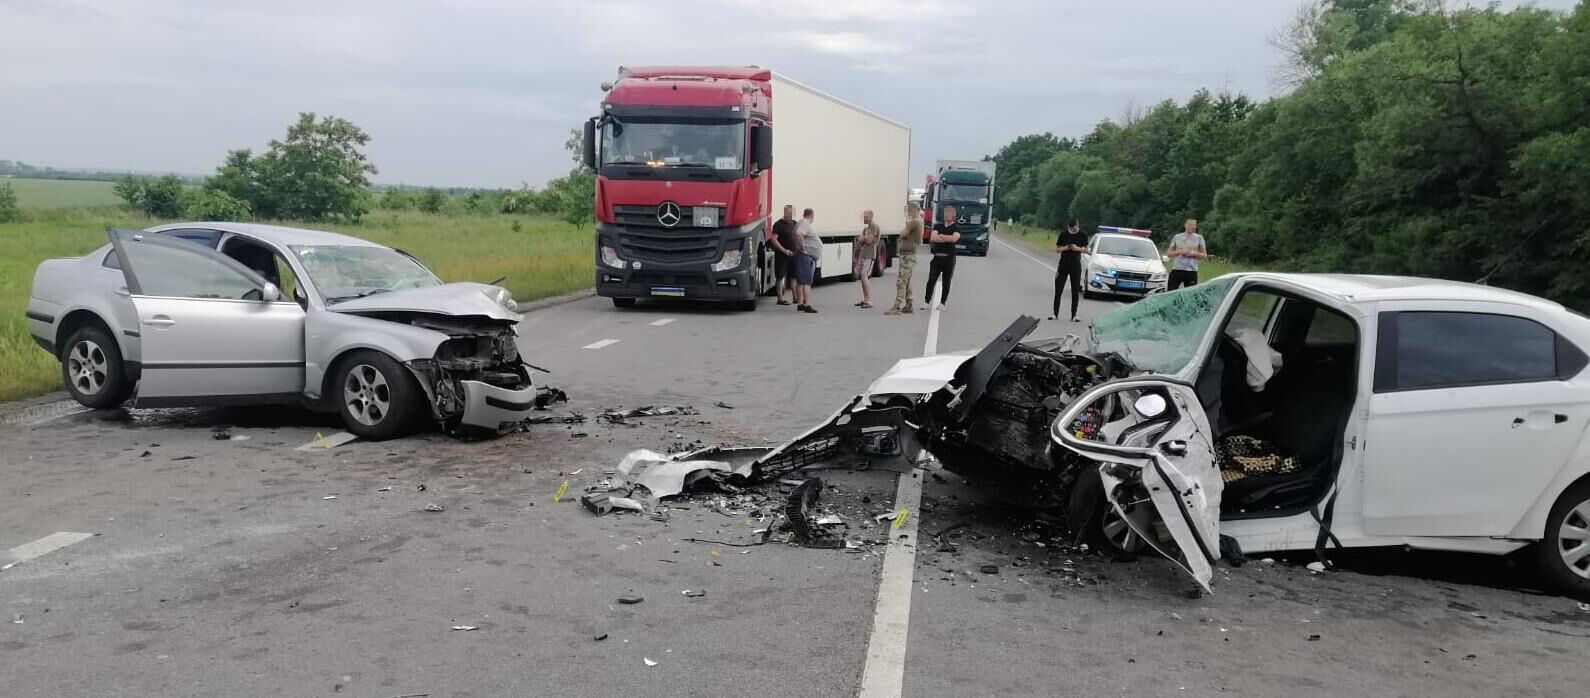 Обломки разлетелись по дороге: во Львовской области в результате ДТП пострадали пять человек. Фото